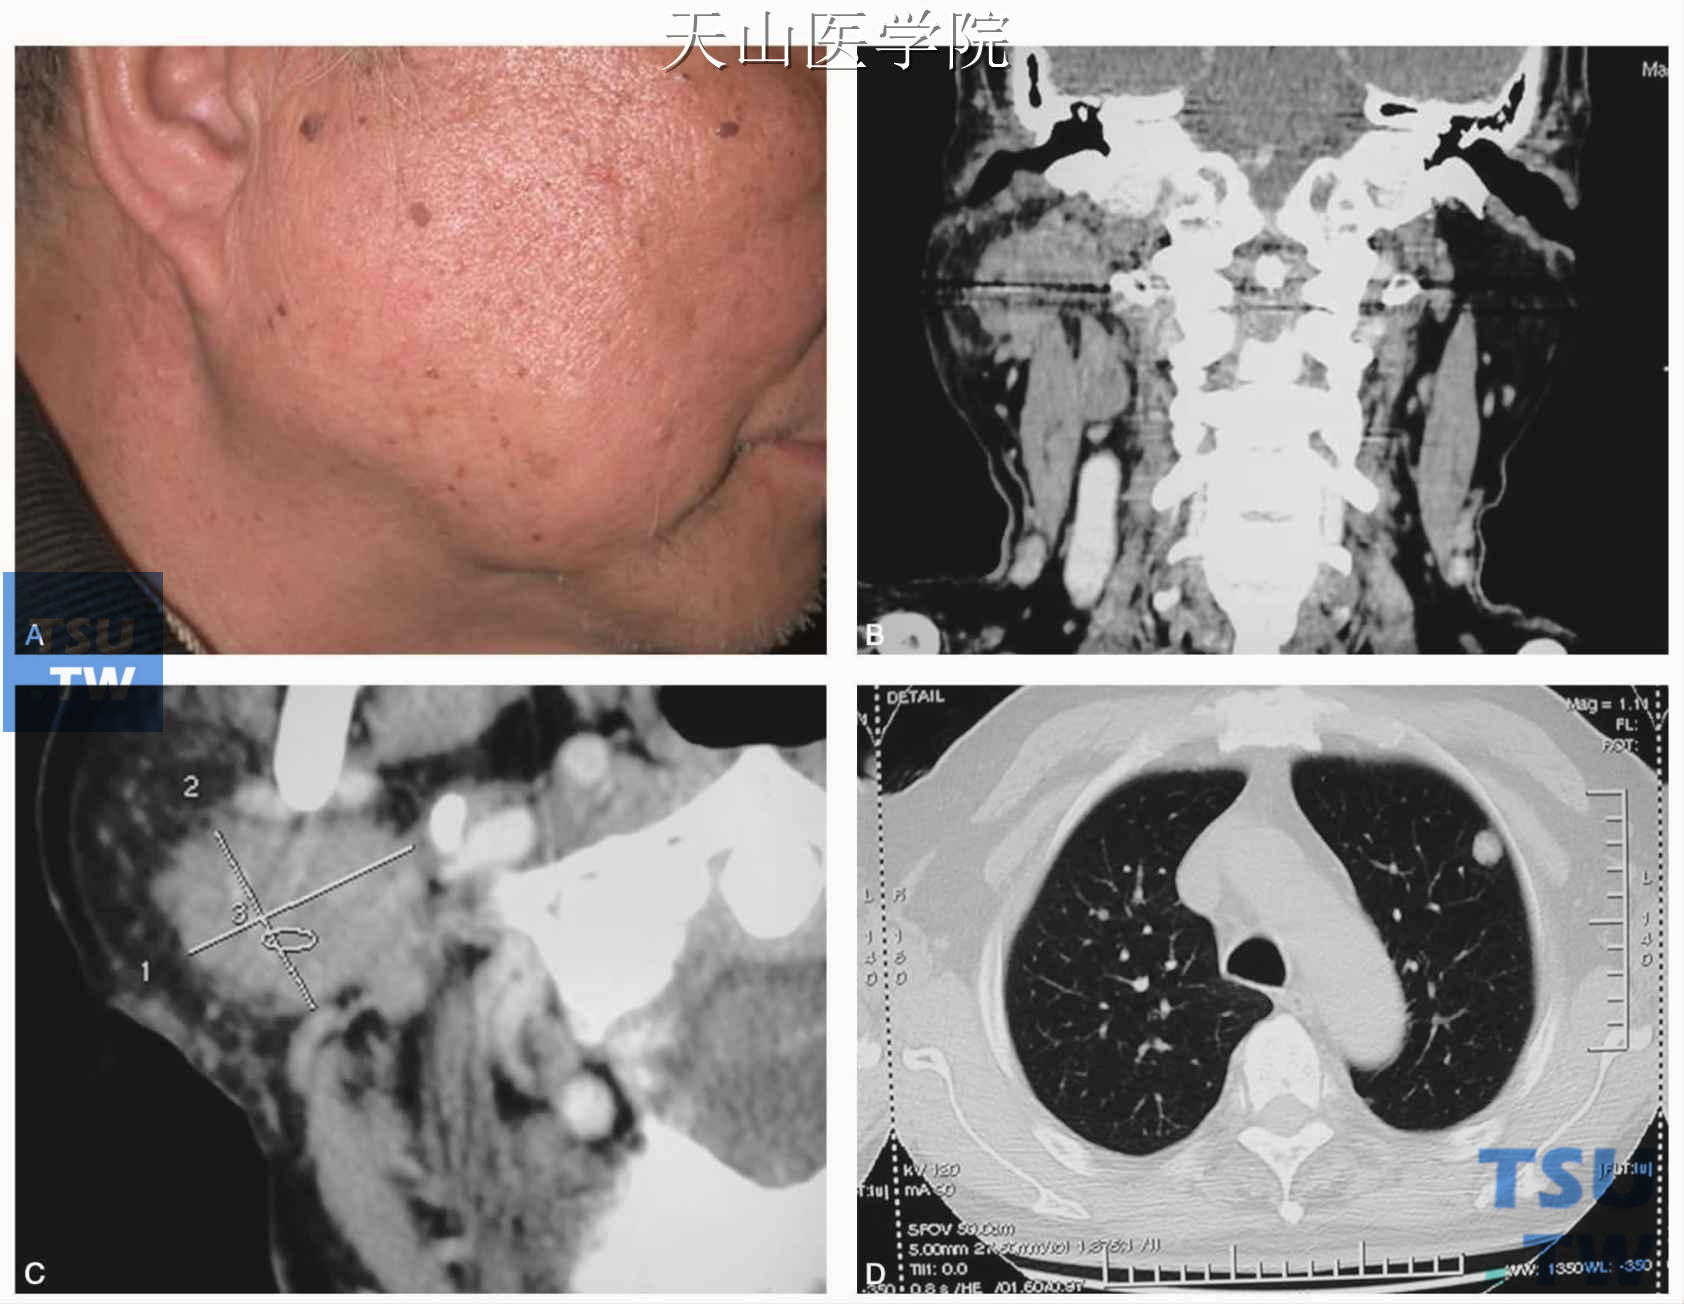 右腮腺癌治疗前：A.右侧腮腺肿块；B、C. CT显示右腮腺不规则高密度团块；D. CT显示肺部转移灶